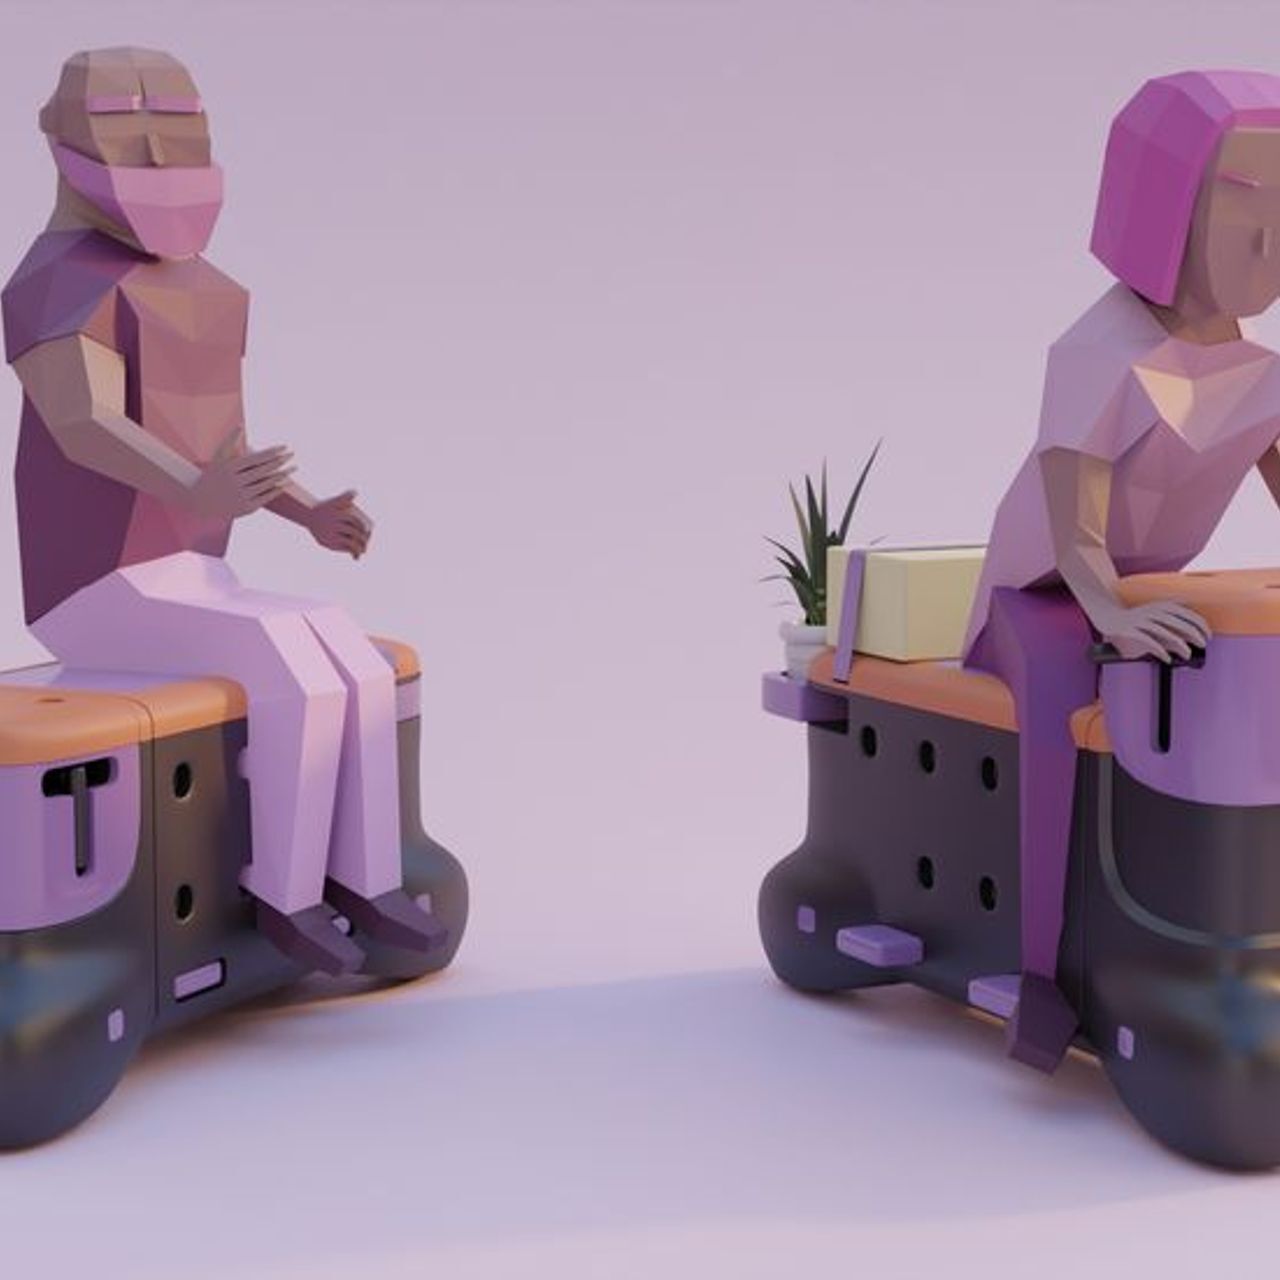 'TOD' est le scooter-banc créé par les étudiants en design Corentin Janel et Guillaume Innocenti